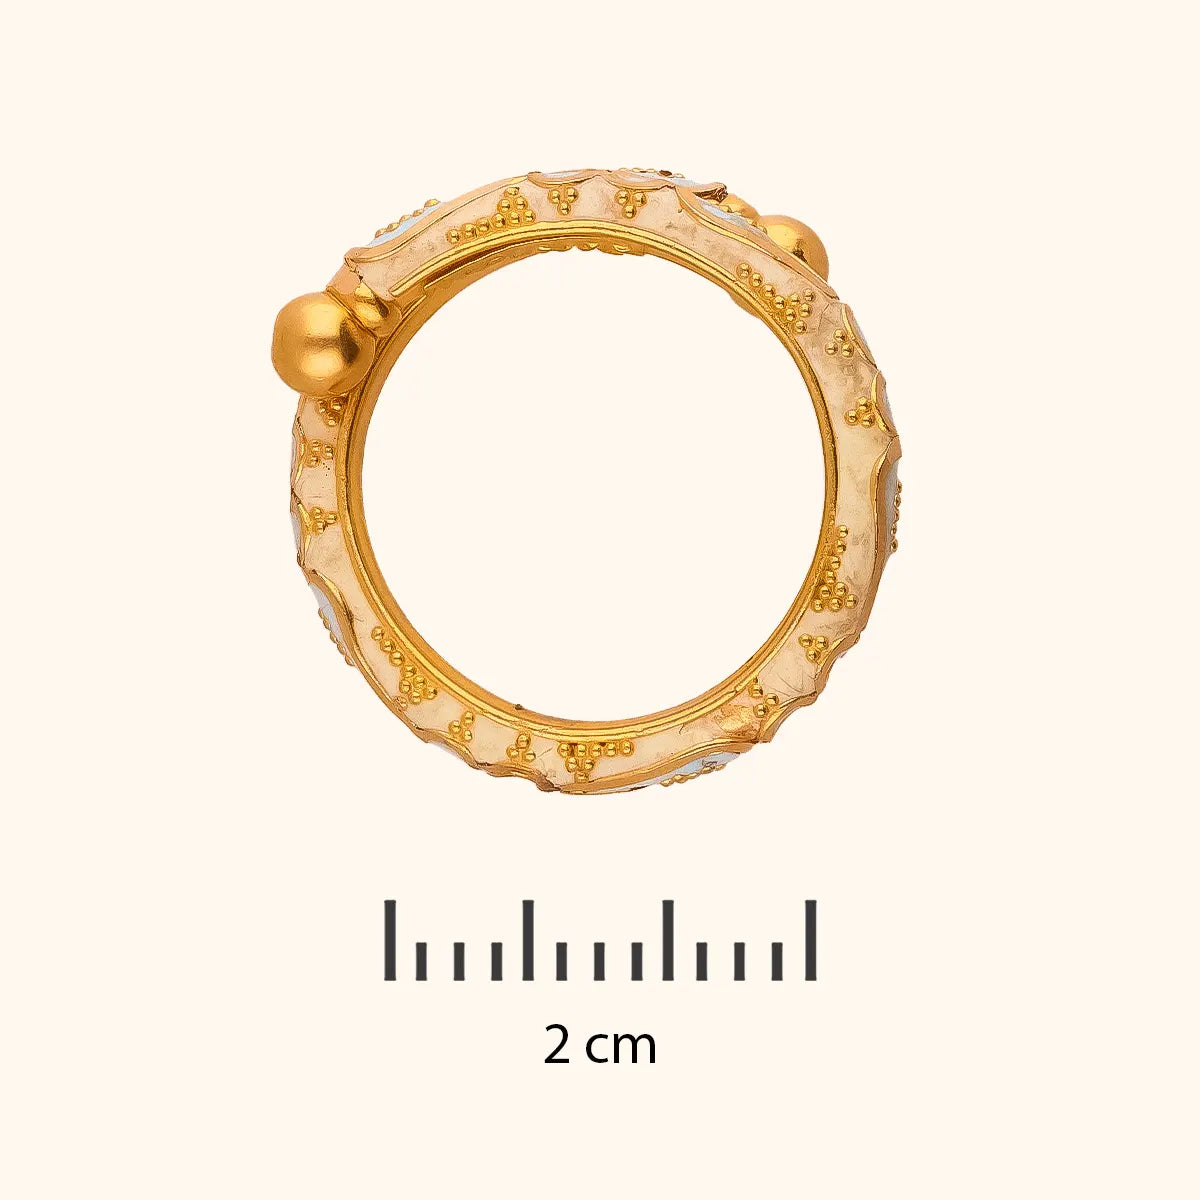 avsar Anjali 18kt Diamond Rose Gold ring Price in India - Buy avsar Anjali  18kt Diamond Rose Gold ring online at Flipkart.com